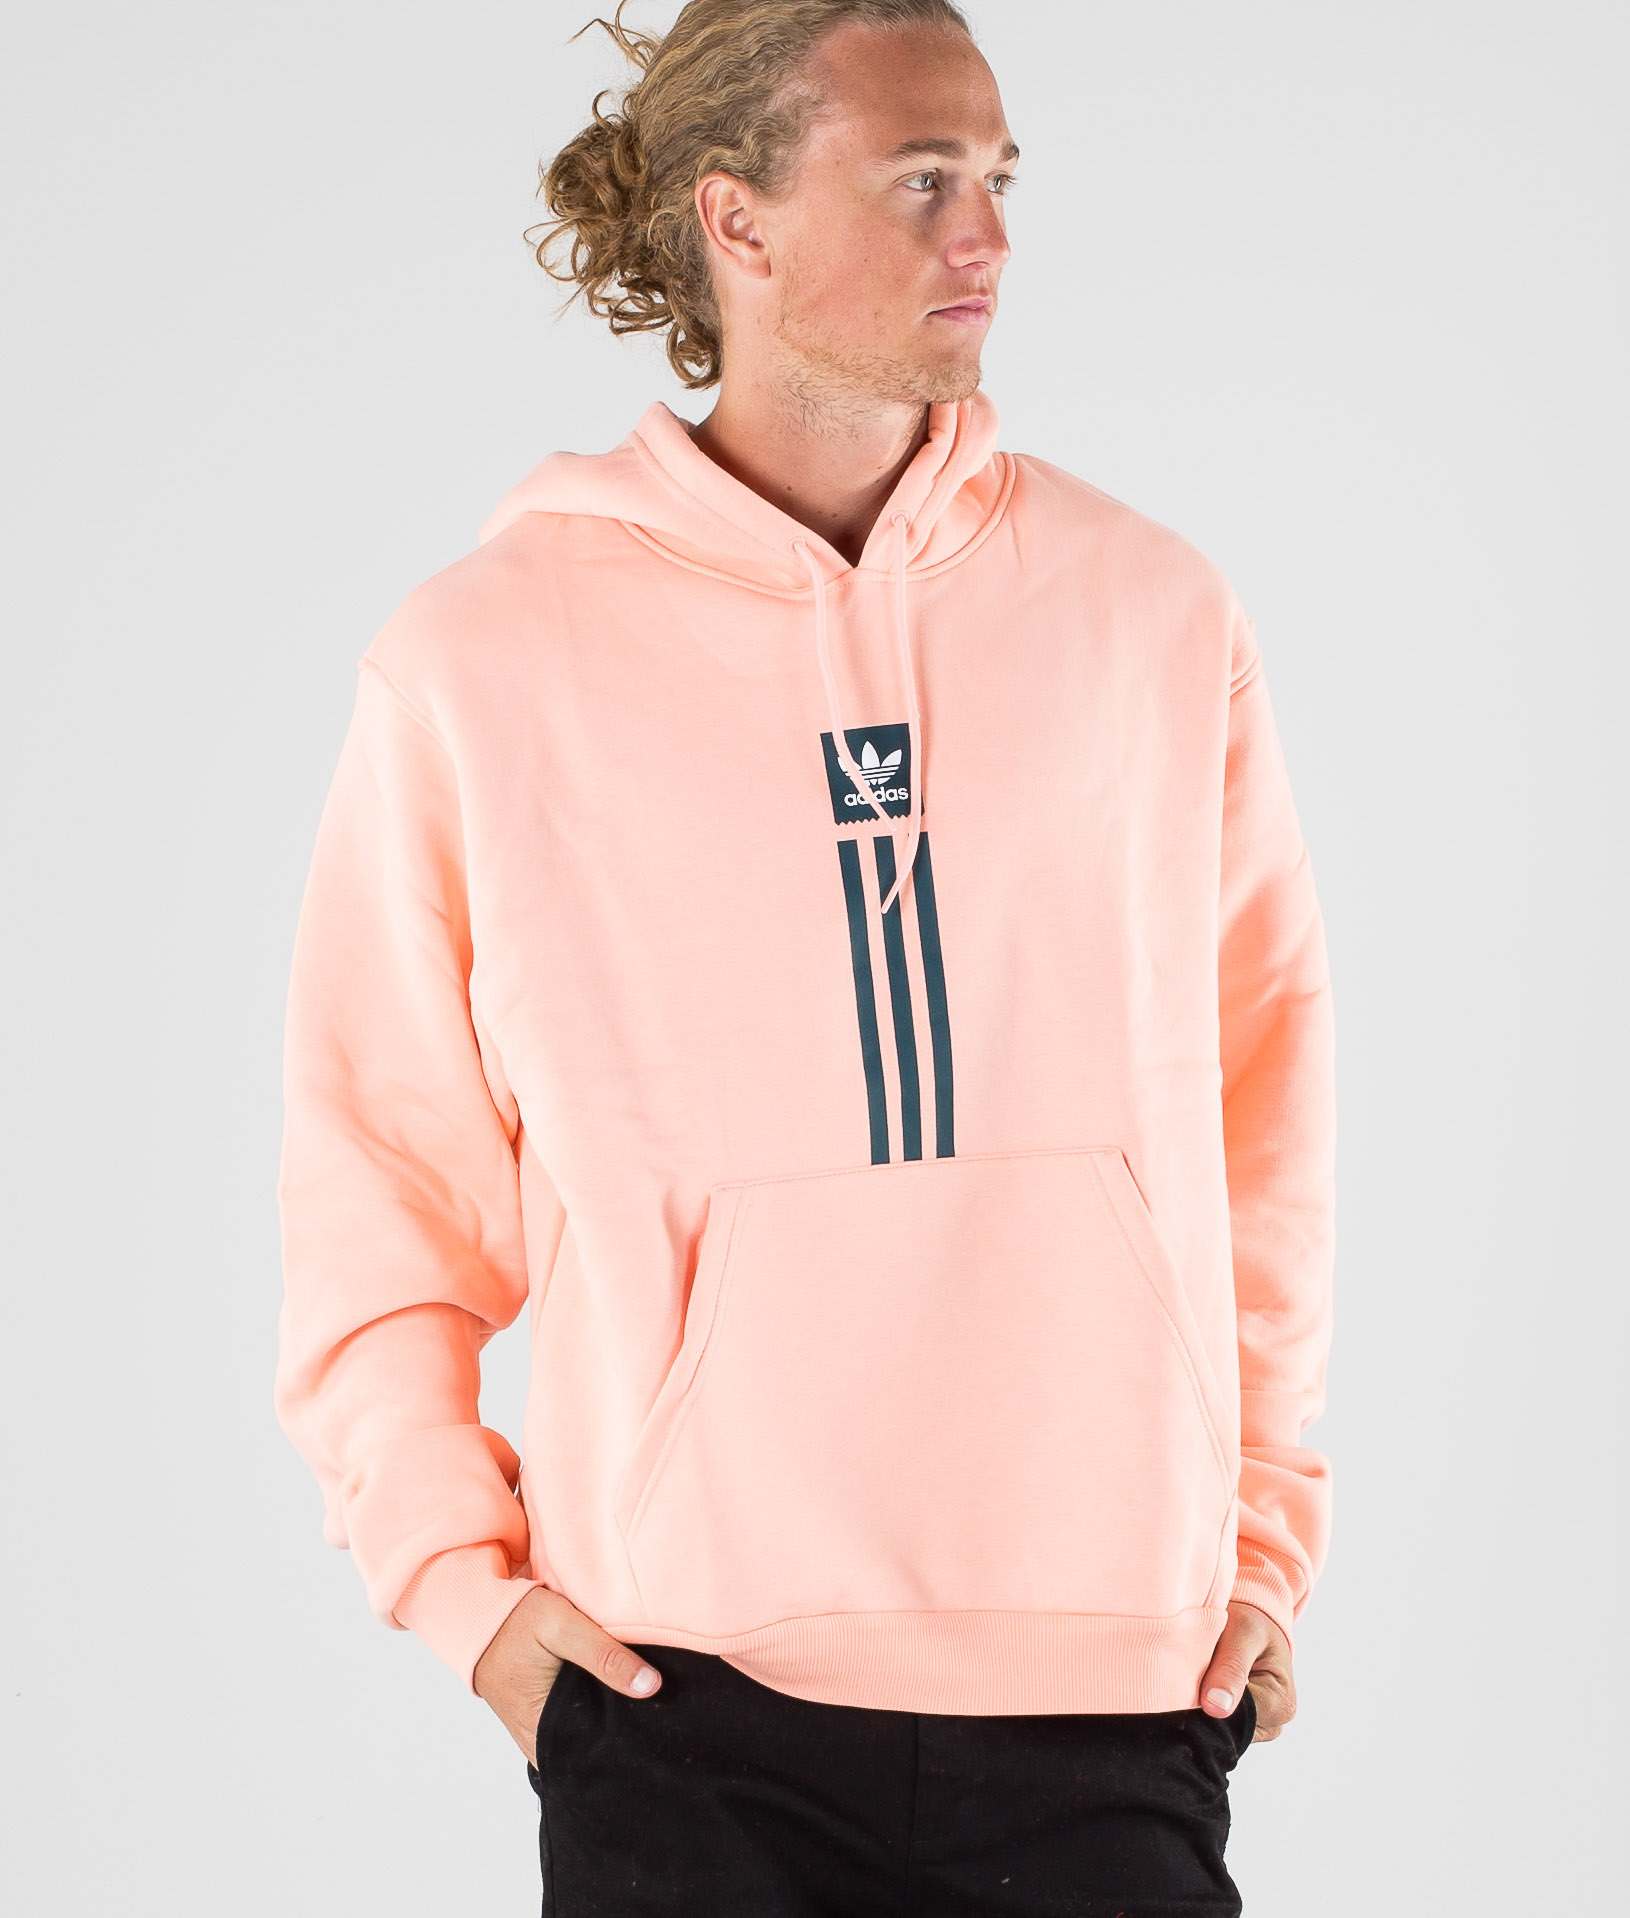 Adidas Skateboarding Solid Pillar Hd Hoodie Glow Pink White